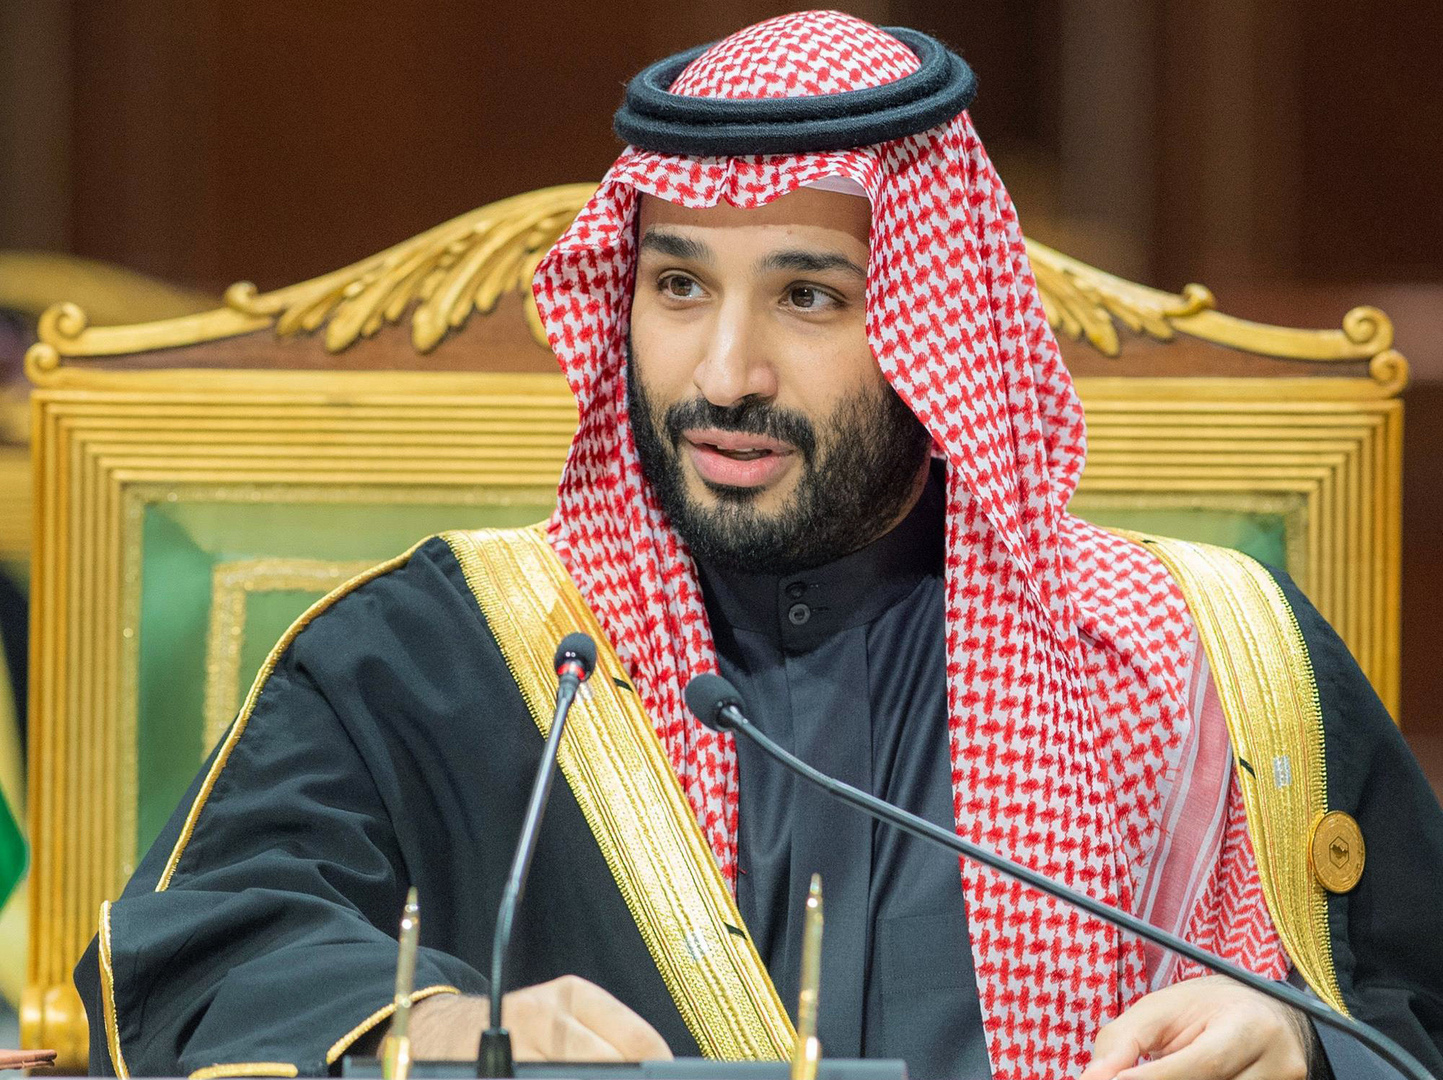 ولي العهد السعودي يطلق 4 مناطق اقتصادية خاصة تشمل حوافز أبرزها الملكية الأجنبية بنسبة 100%